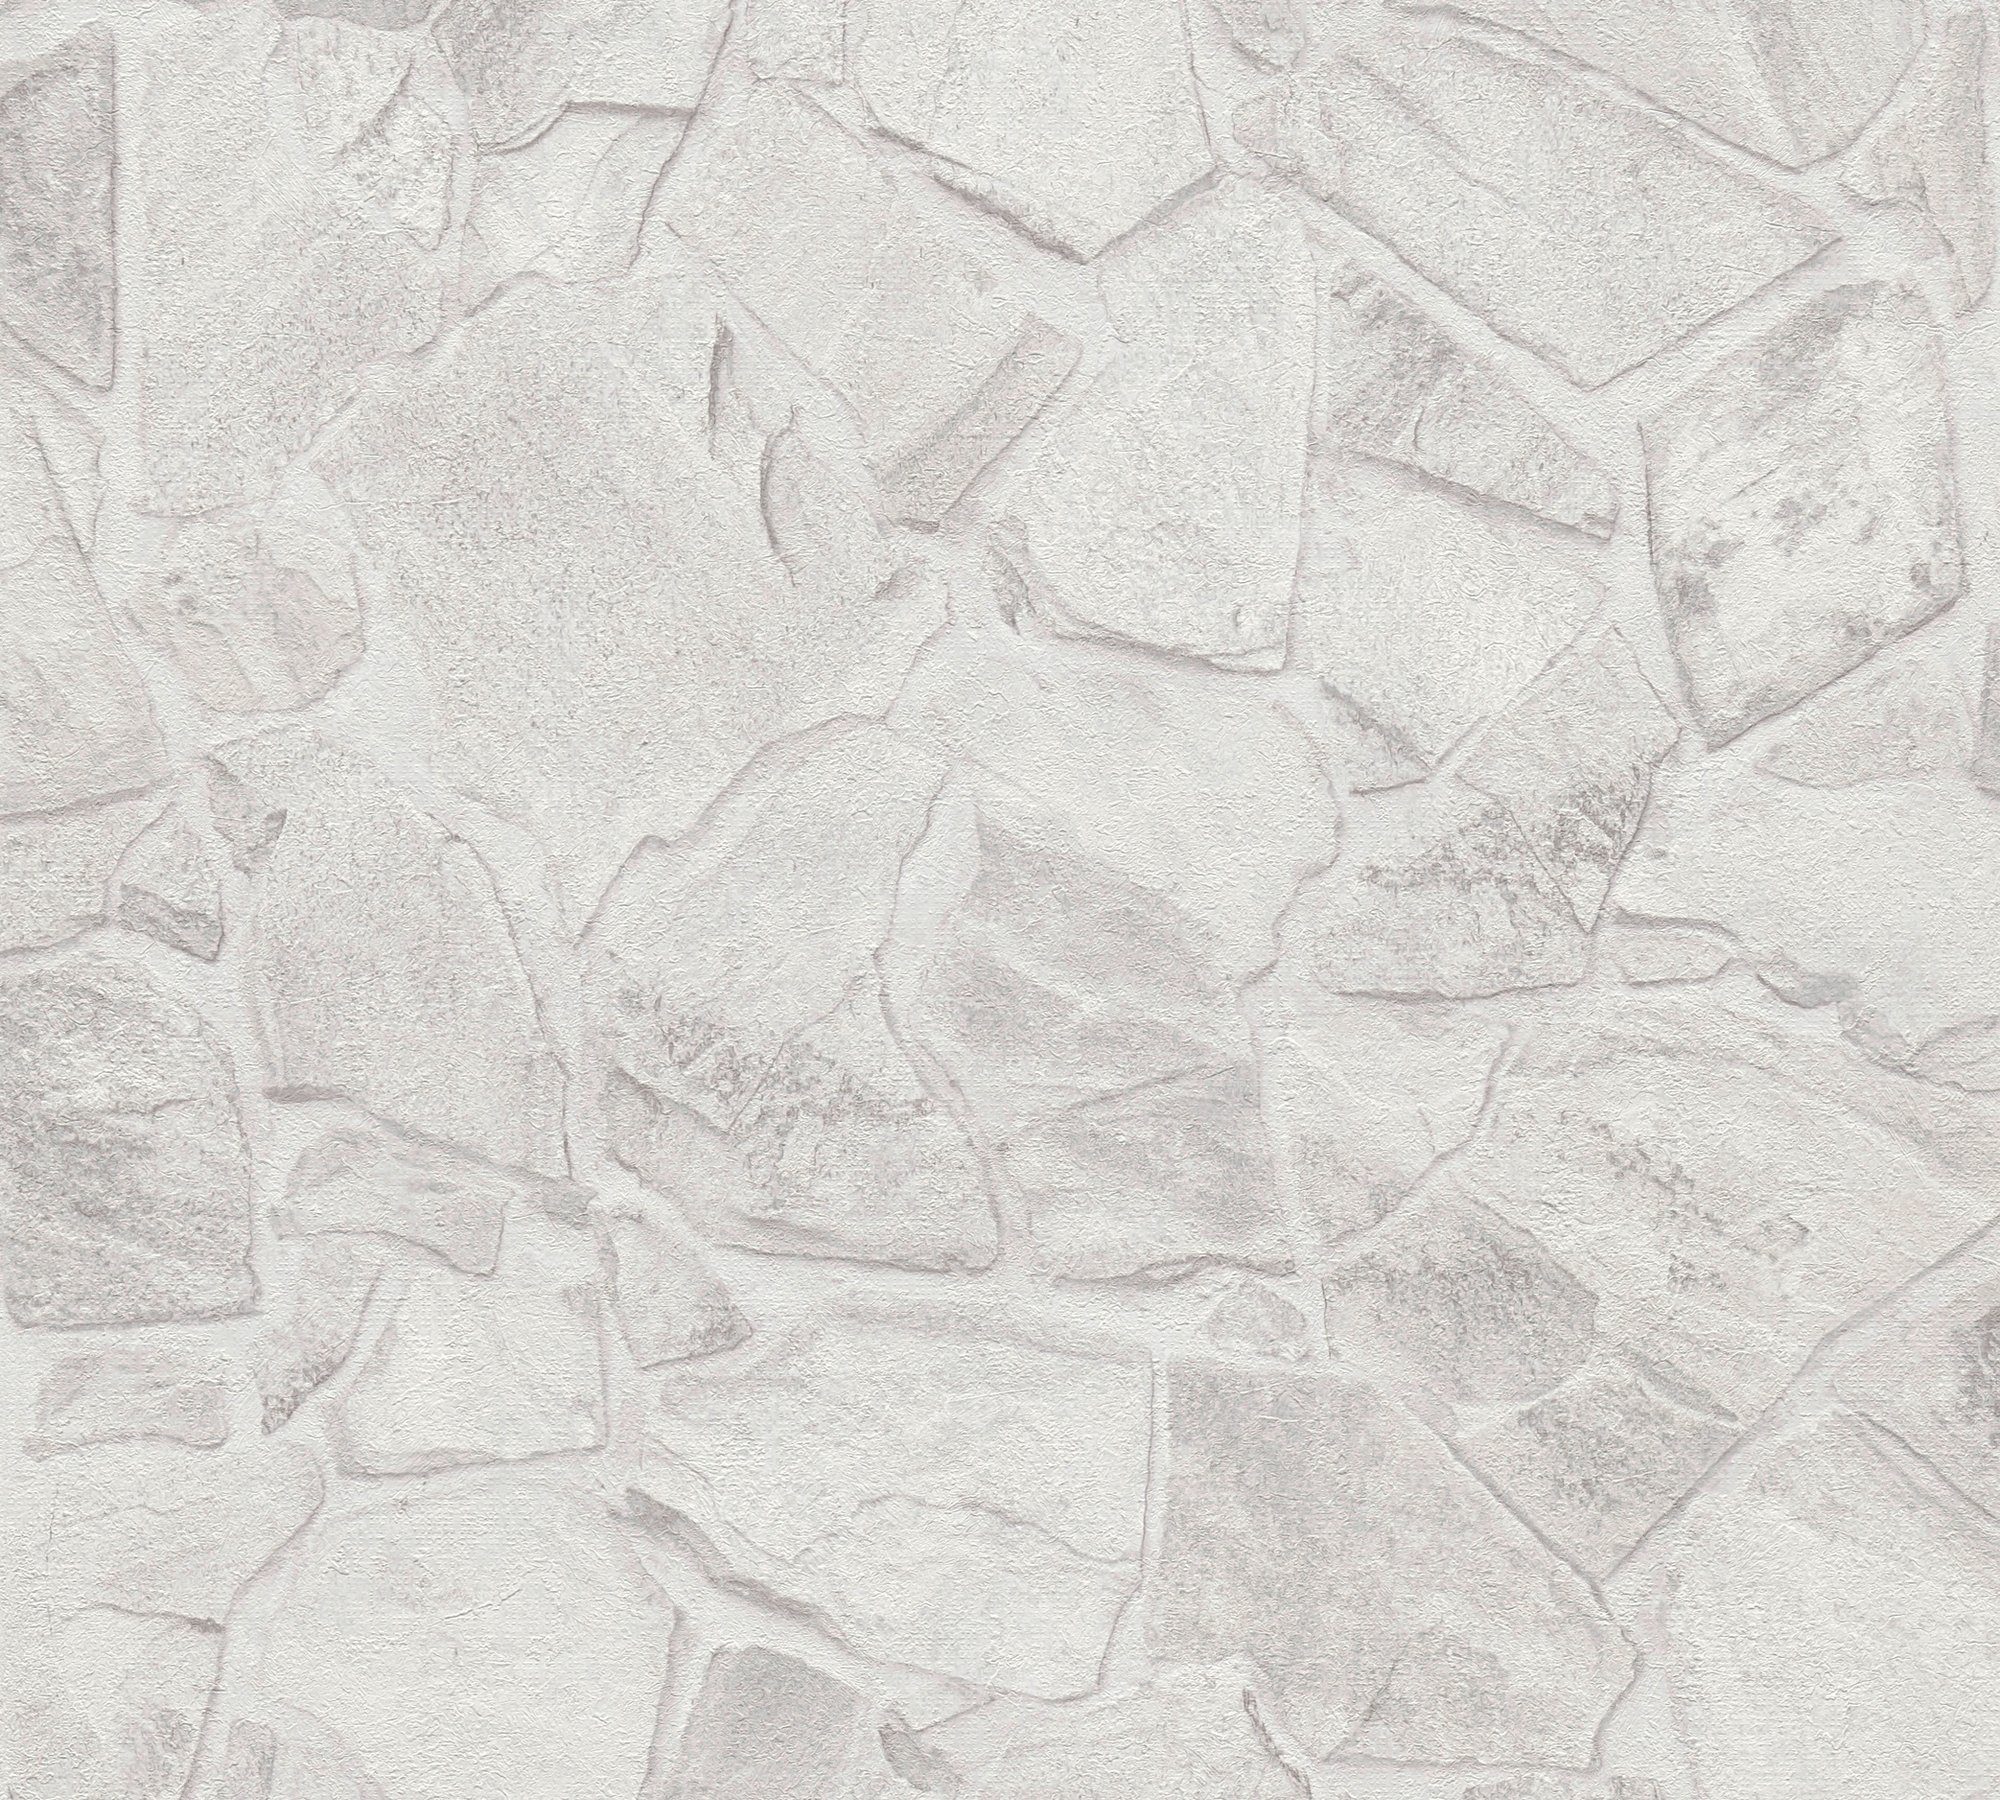 A.S. Création Vliestapete Terra Grau,Weiß,Grau St), strukturiert, Naturstein 3d-Optik Tapete matt, Stein-Tapete Steinoptik, Steinwand (1